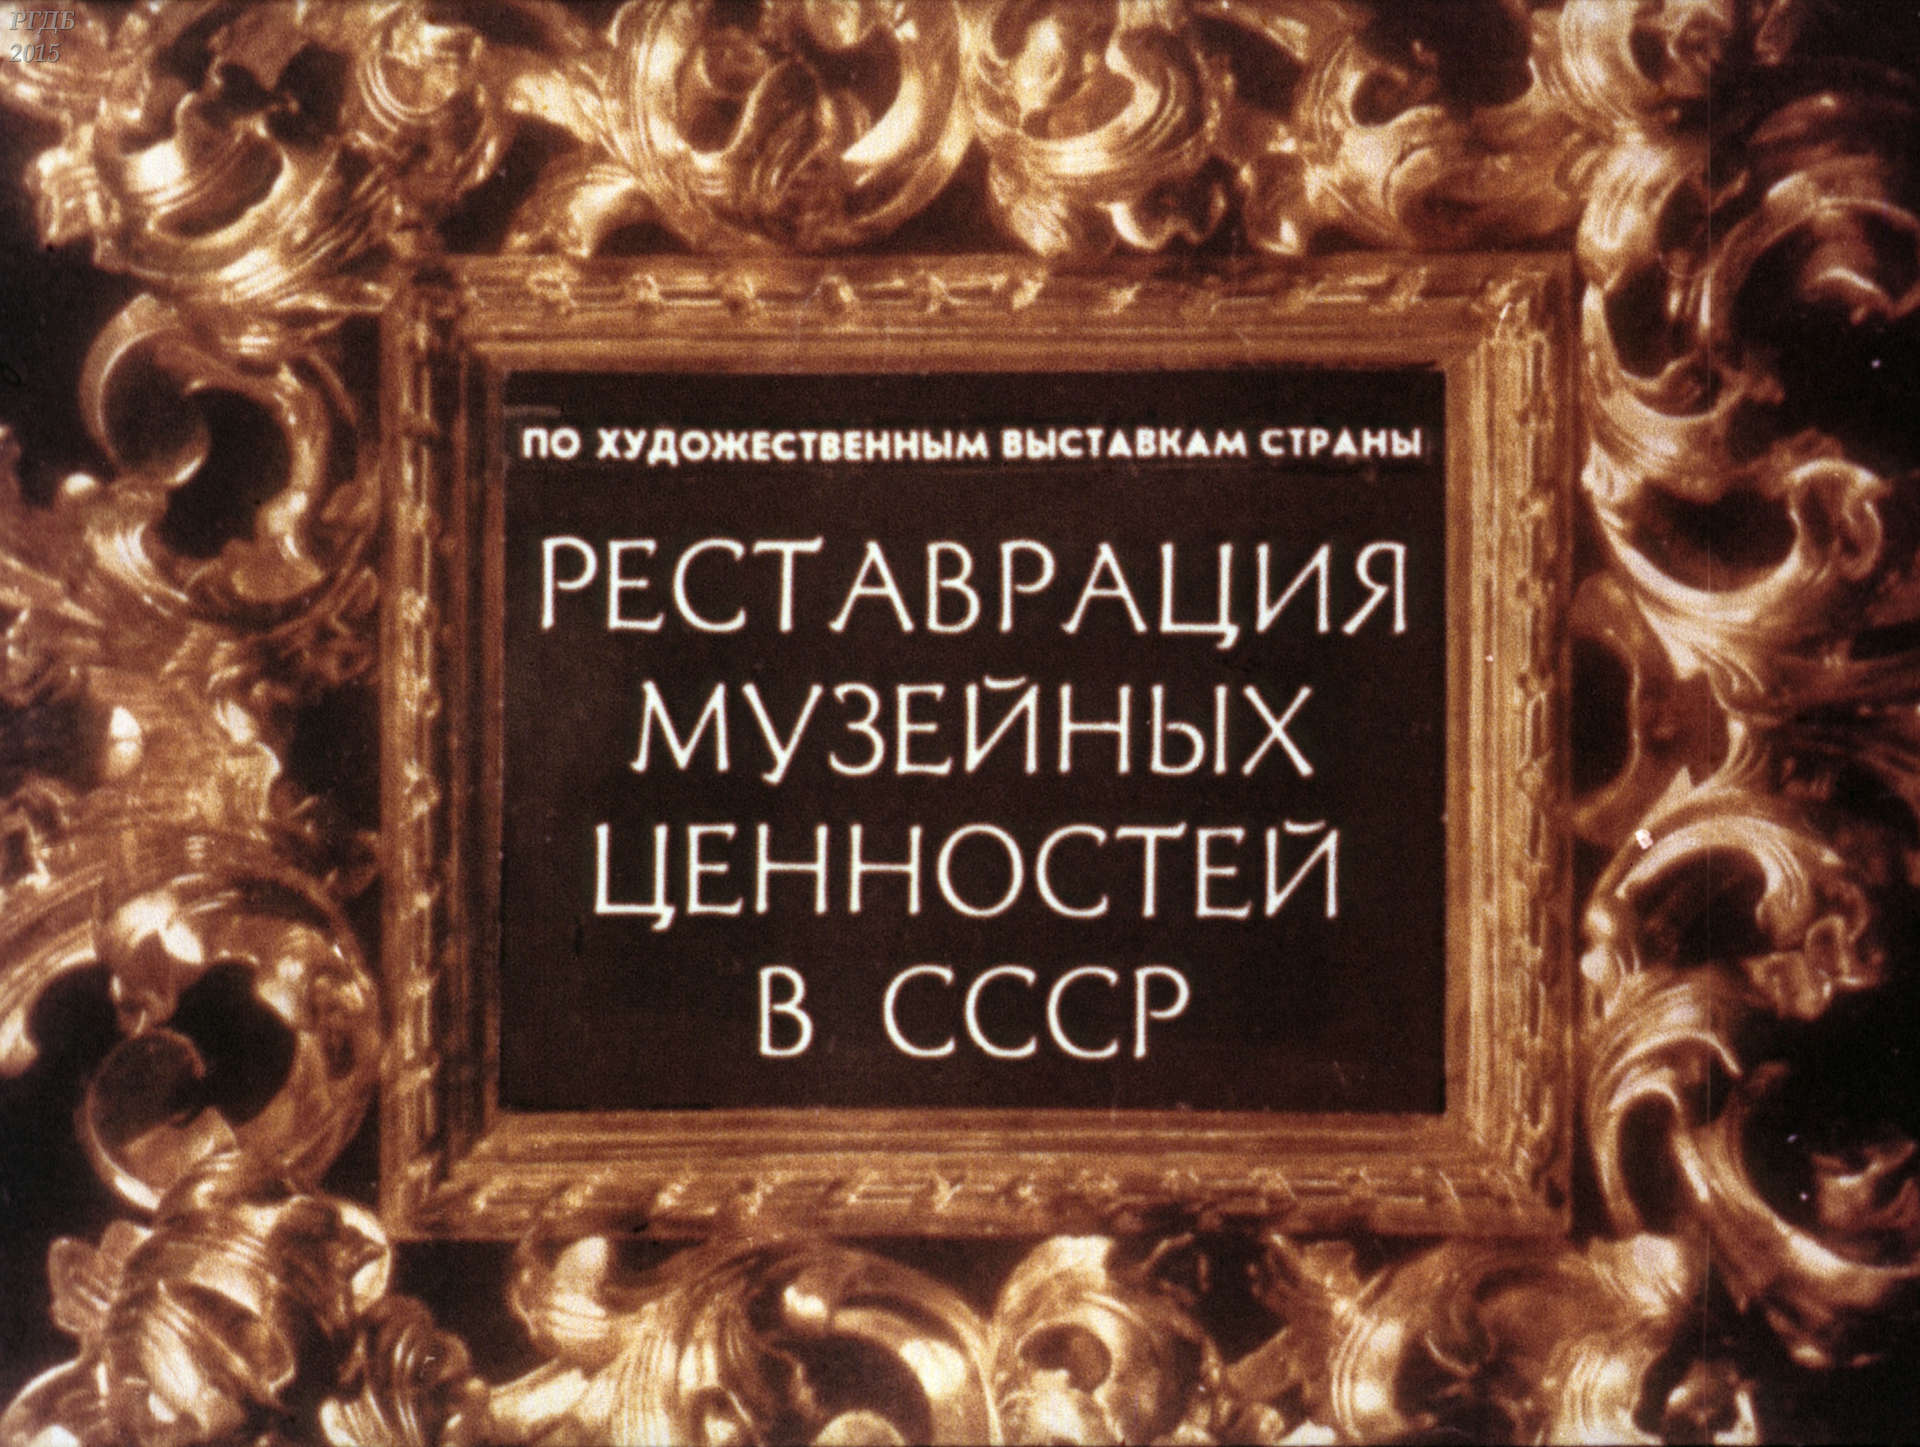 Реставрация музейных ценностей в СССР (По художественным выставкам страны)